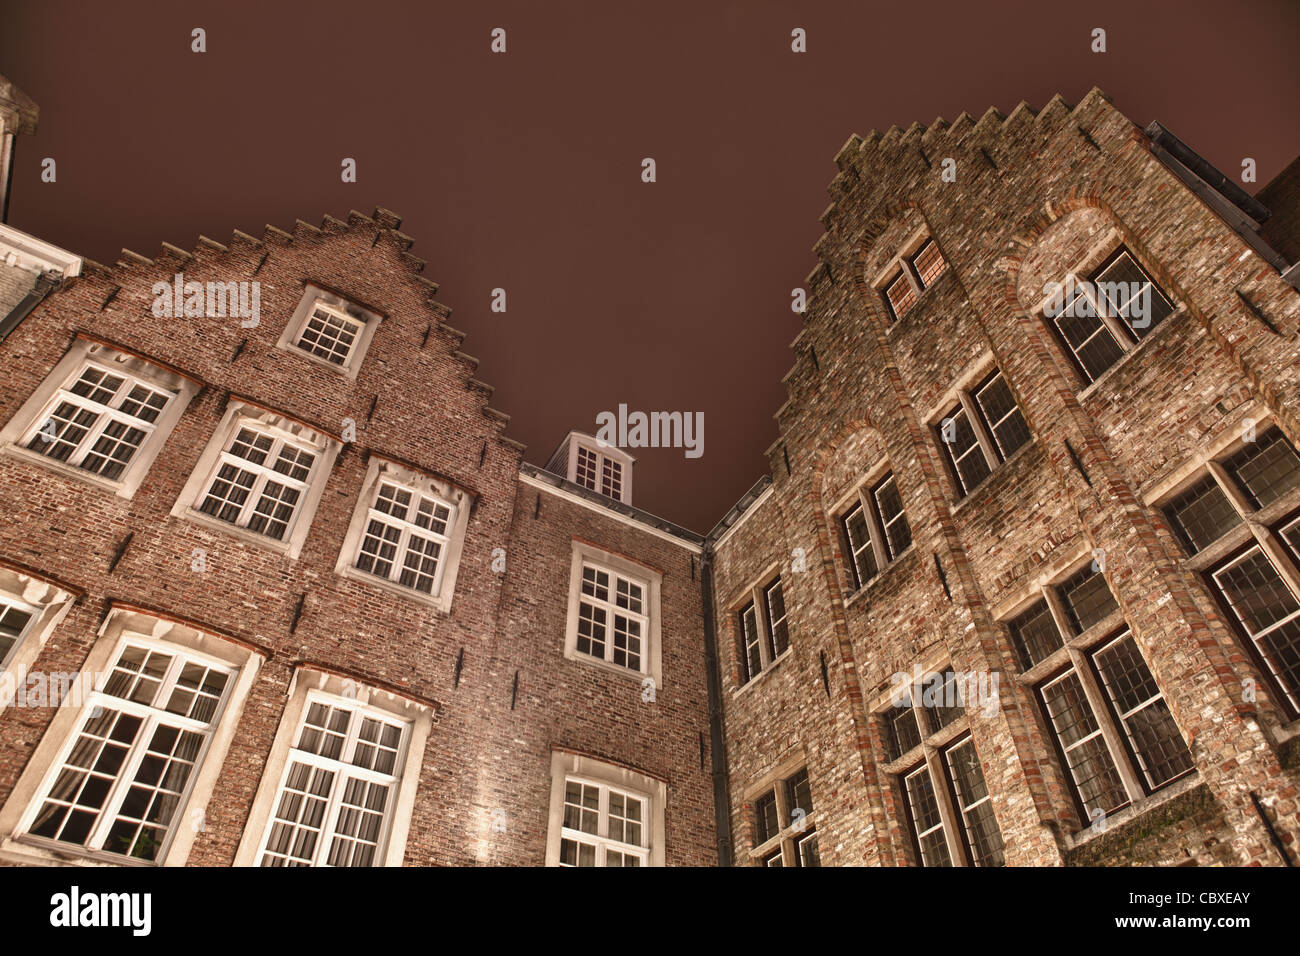 Photo de deux édifices de l'architecture flamande traditionnelle situé à Brugge (Bruges), Belgique. Photo prise dans la nuit. Banque D'Images